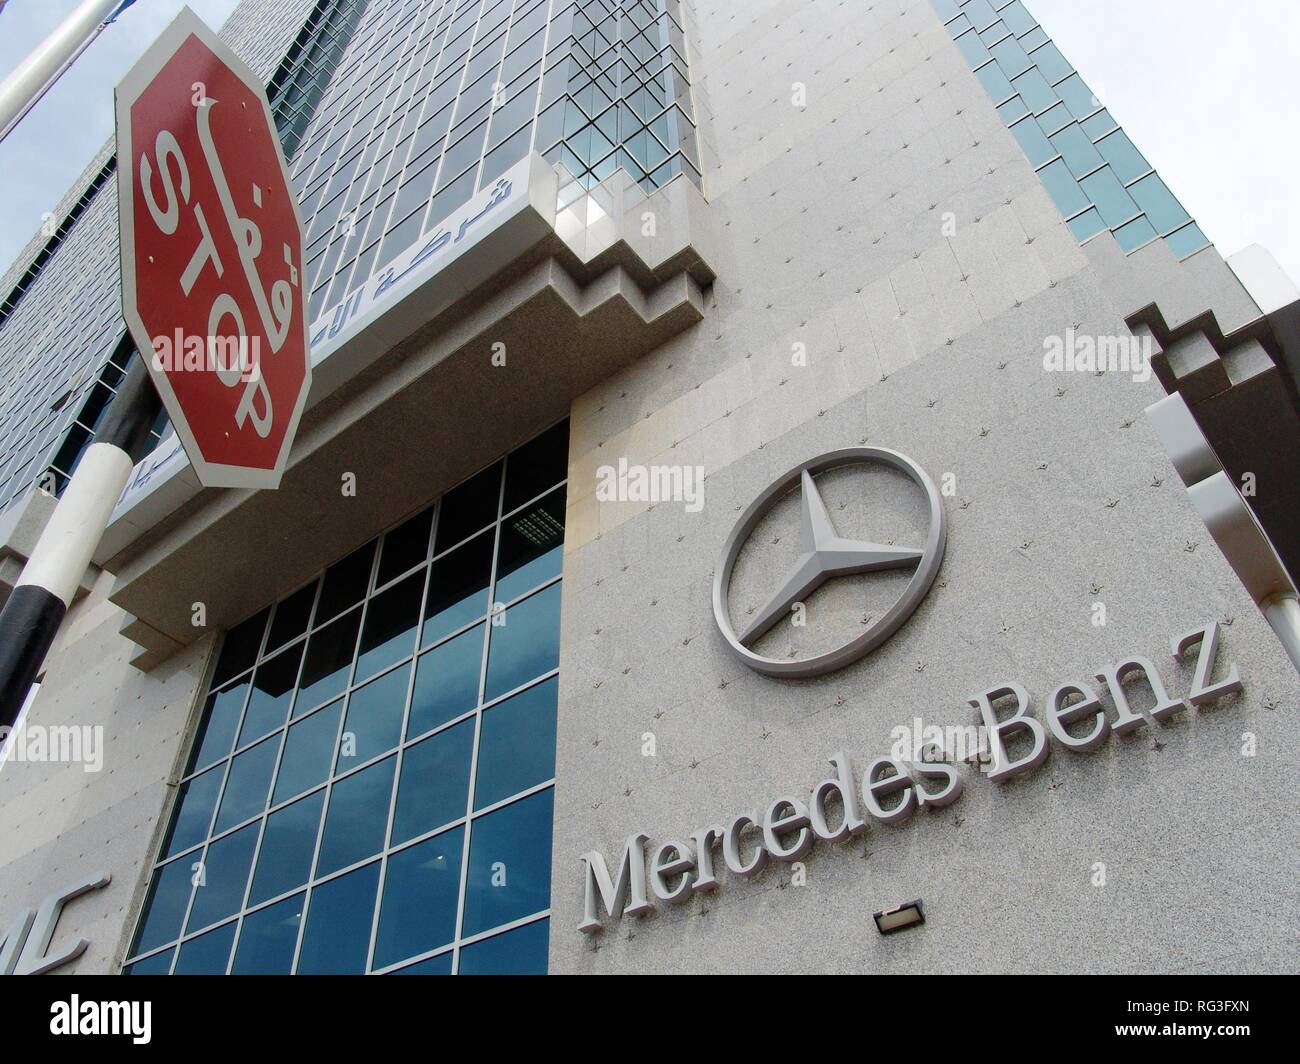 Sono, Emirati Arabi, Abu Dhabi:vettura tedesca il concessionario Mercedes Benz filiale. Foto Stock